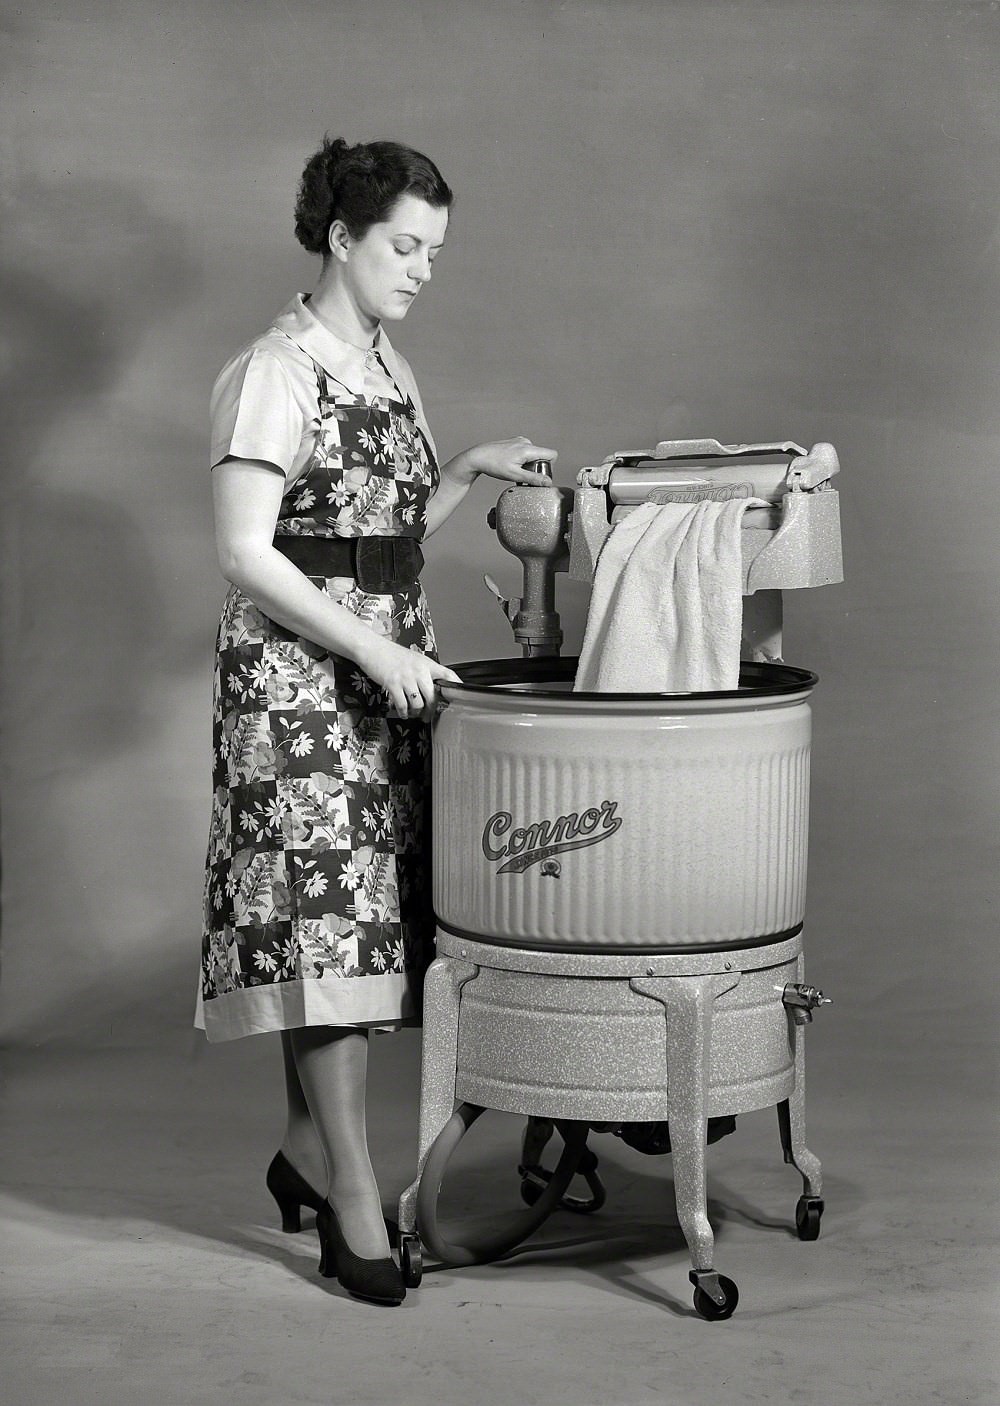 Connor washing machine with motorized wringer, Wellington, New Zealand, Circa 1950